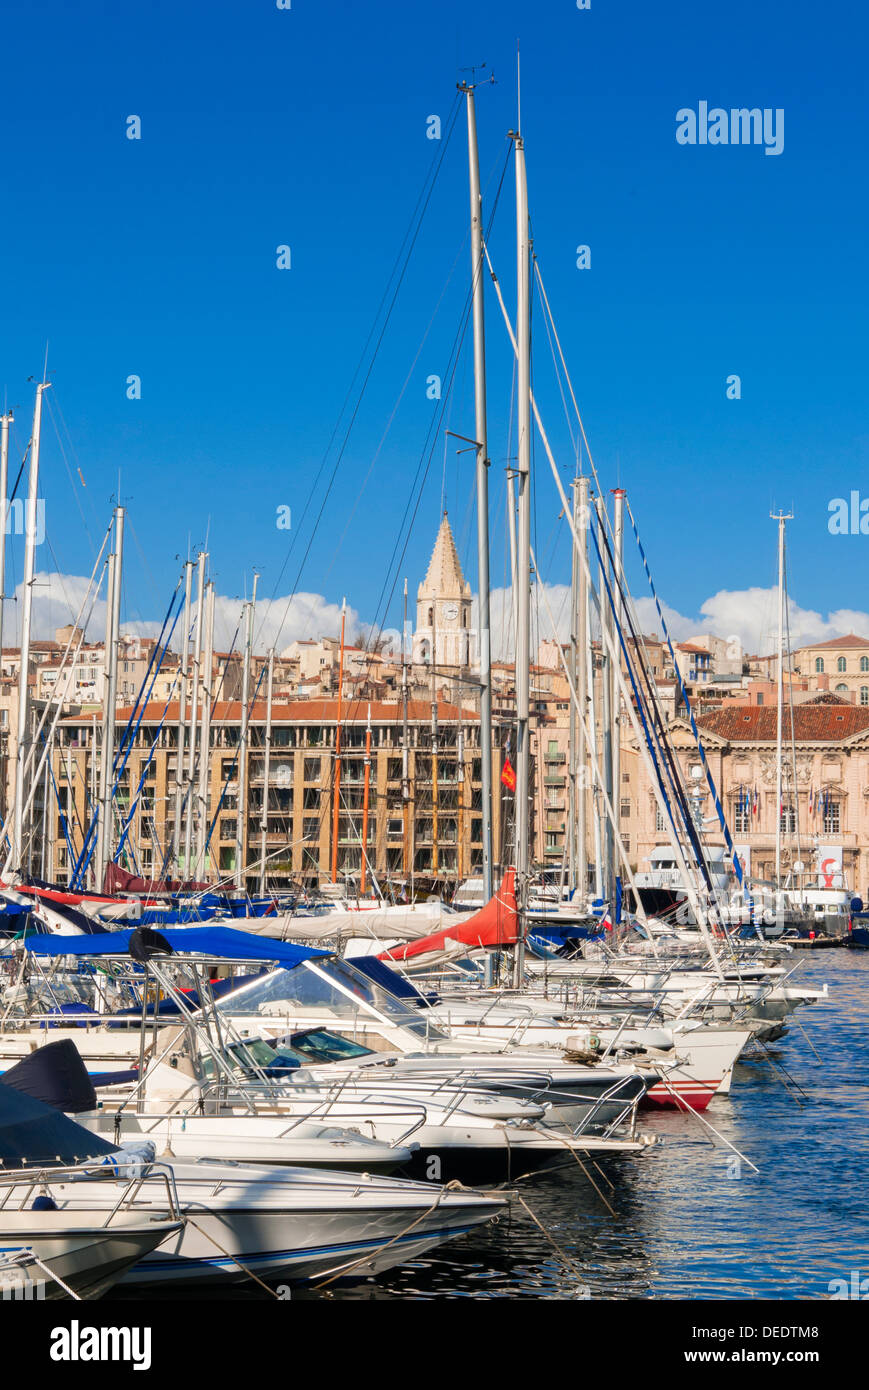 Vue sur le Vieux Port, Marseille, Bouches-du-Rhône, Provence-Alpes-Côte-d'Azur, France, Europe, Méditerranée Banque D'Images